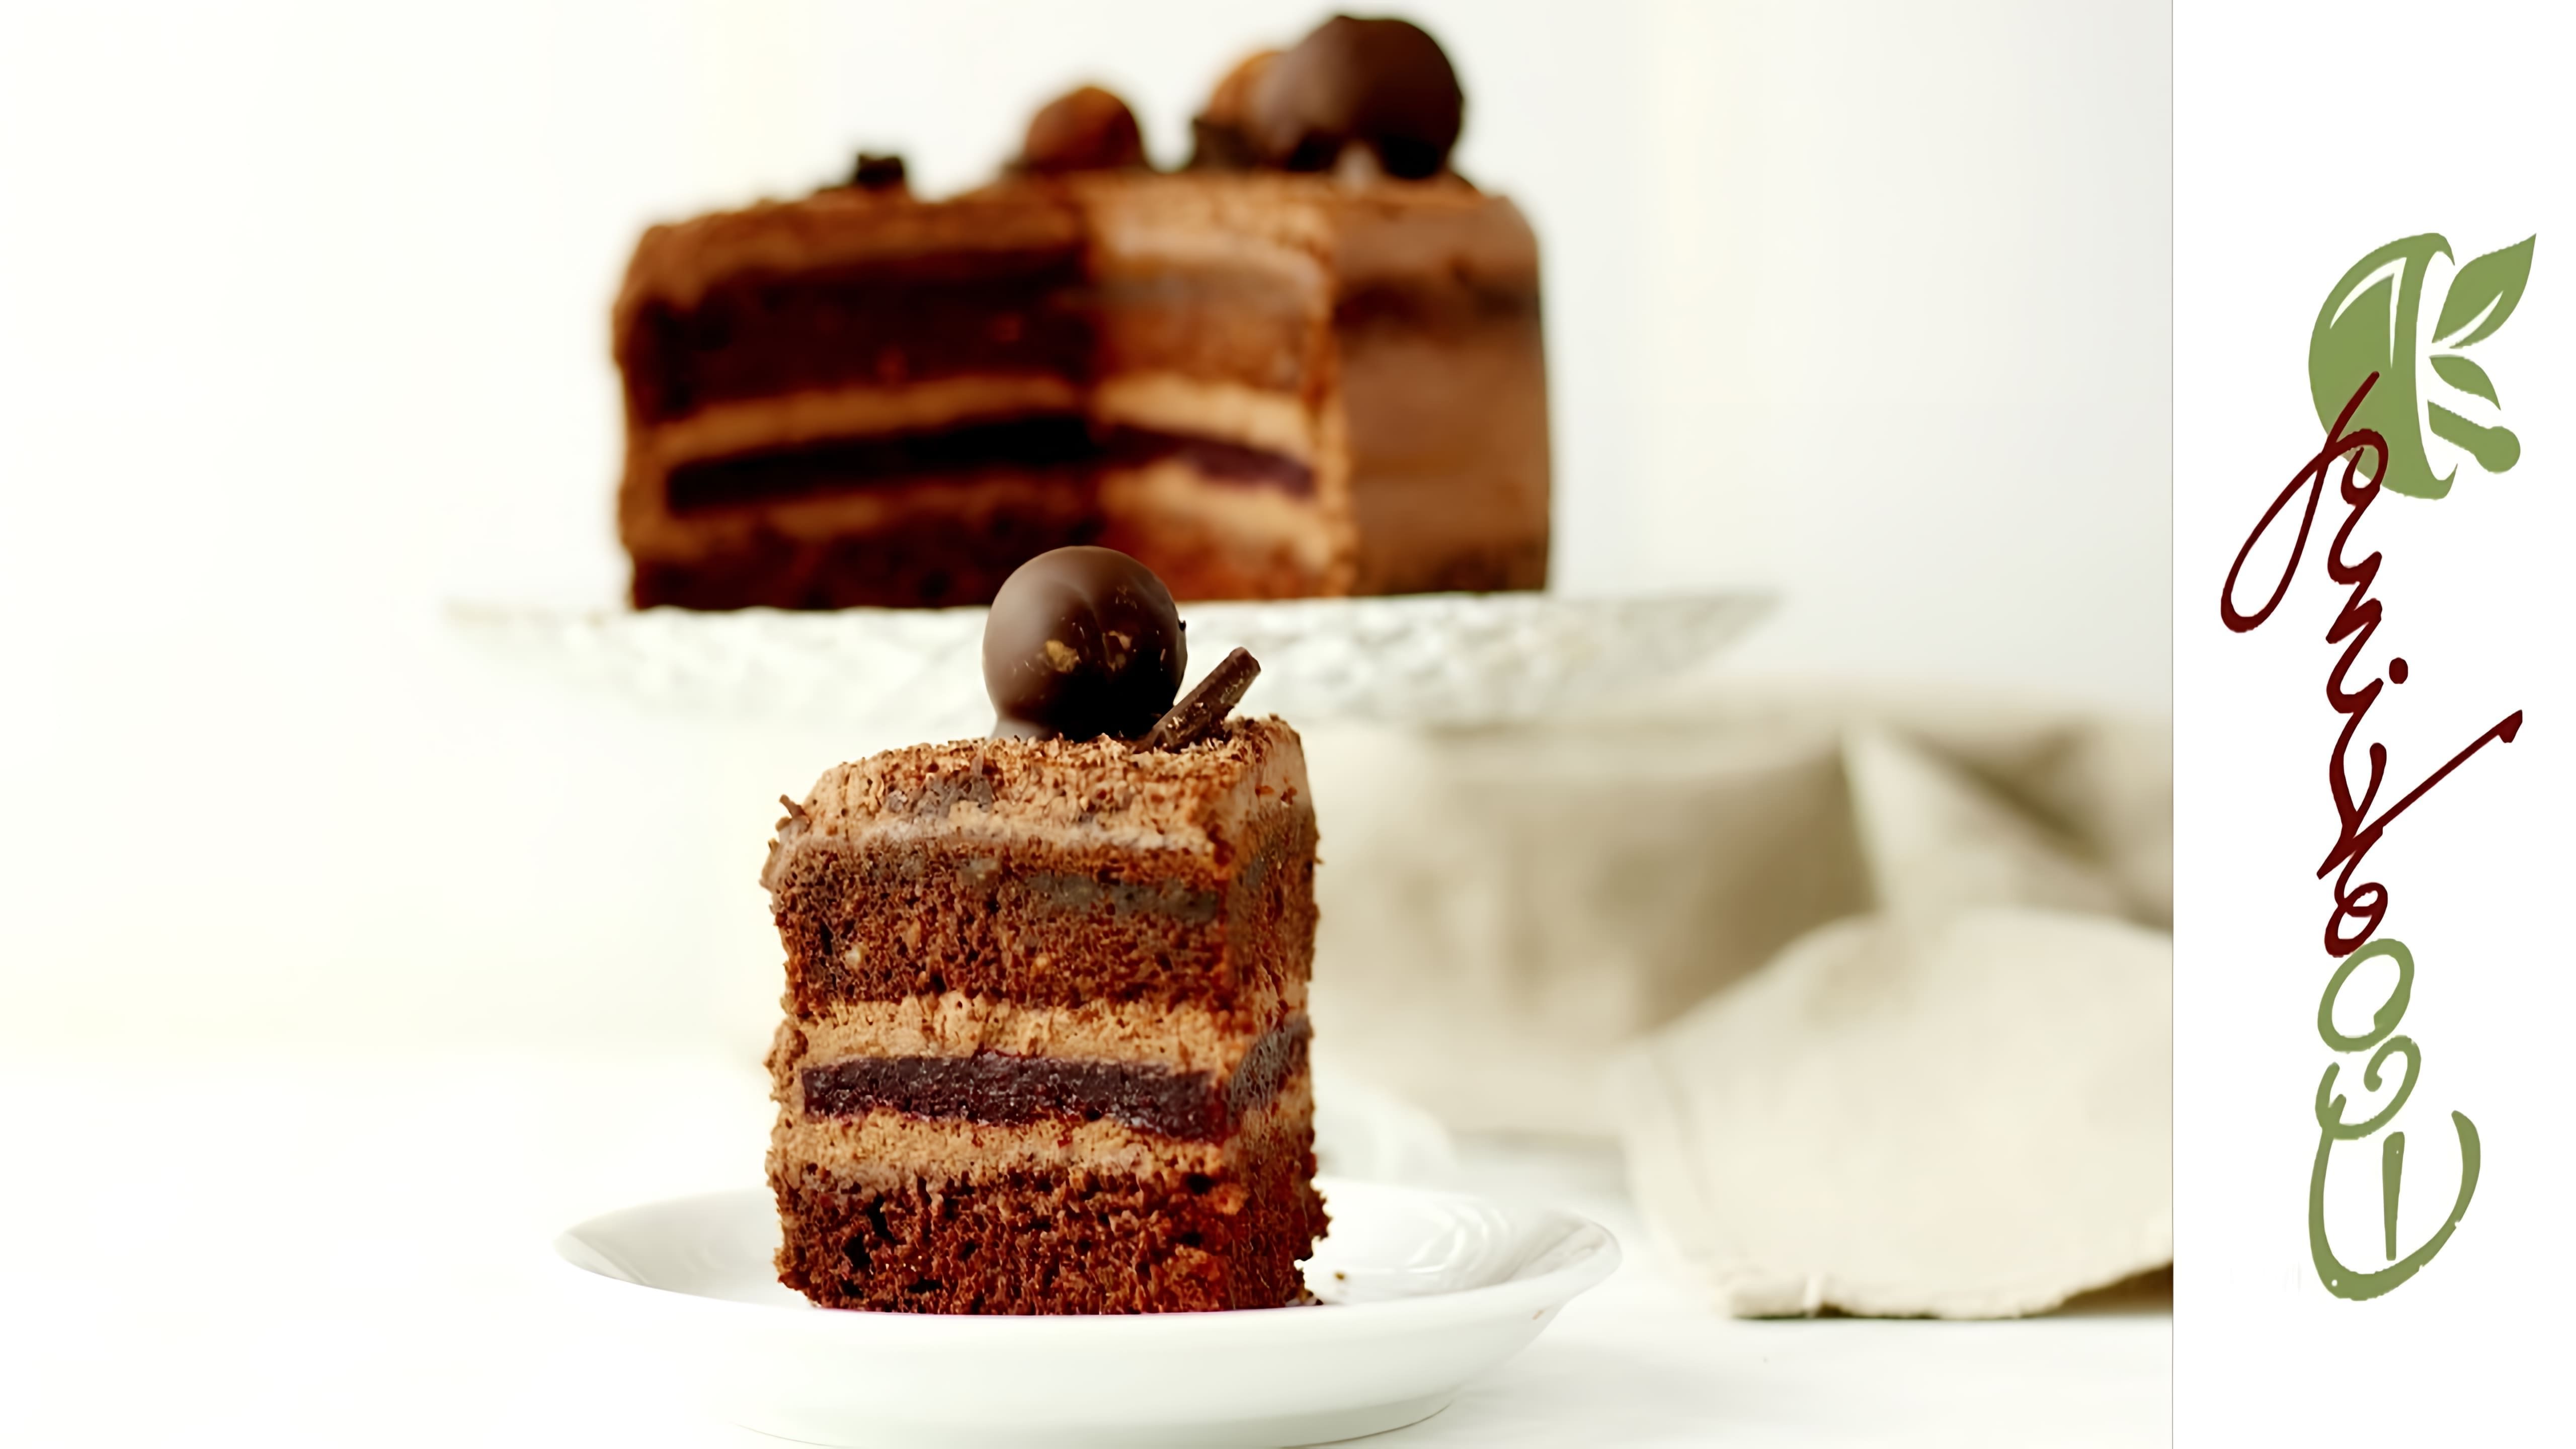 В этом видео демонстрируется рецепт идеального постного шоколадного торта с вишневым конфи и шоколадными трюфелями